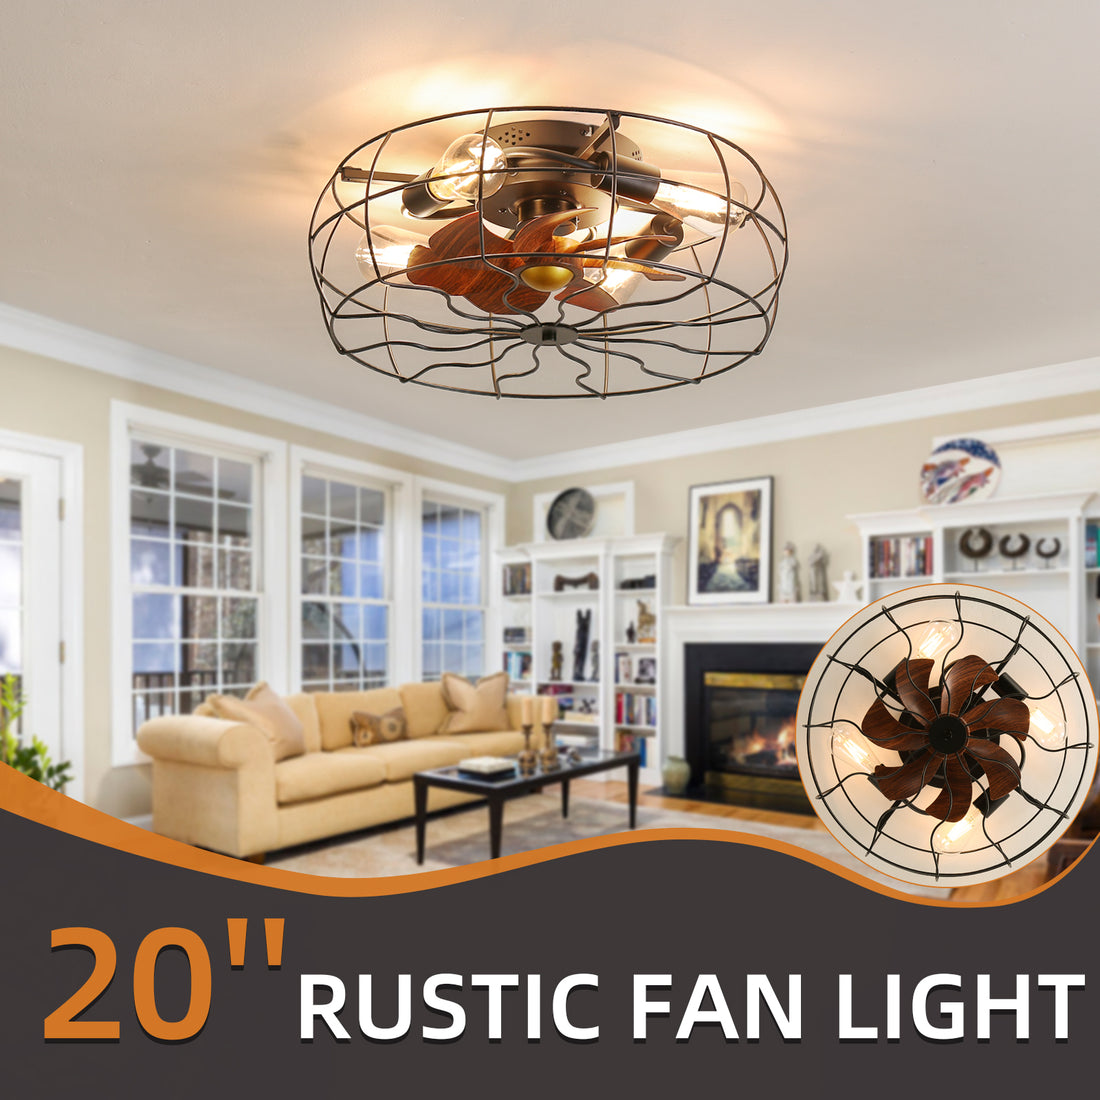 19inch Low Profile Rustic Ceiling Fan Light